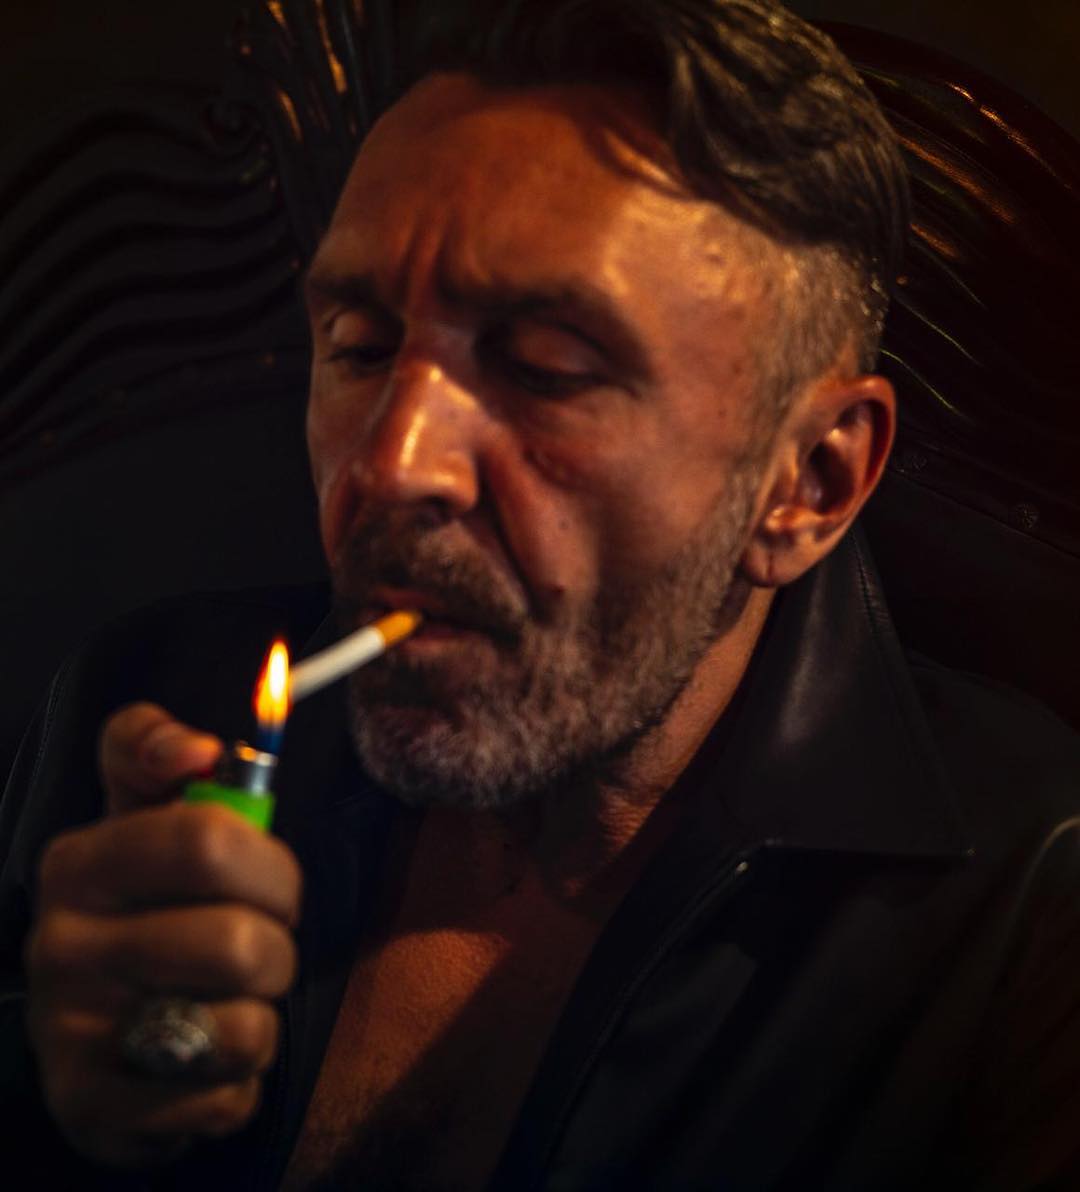 Сергей Шнуров курит сигарету. Портрет, 2018 год